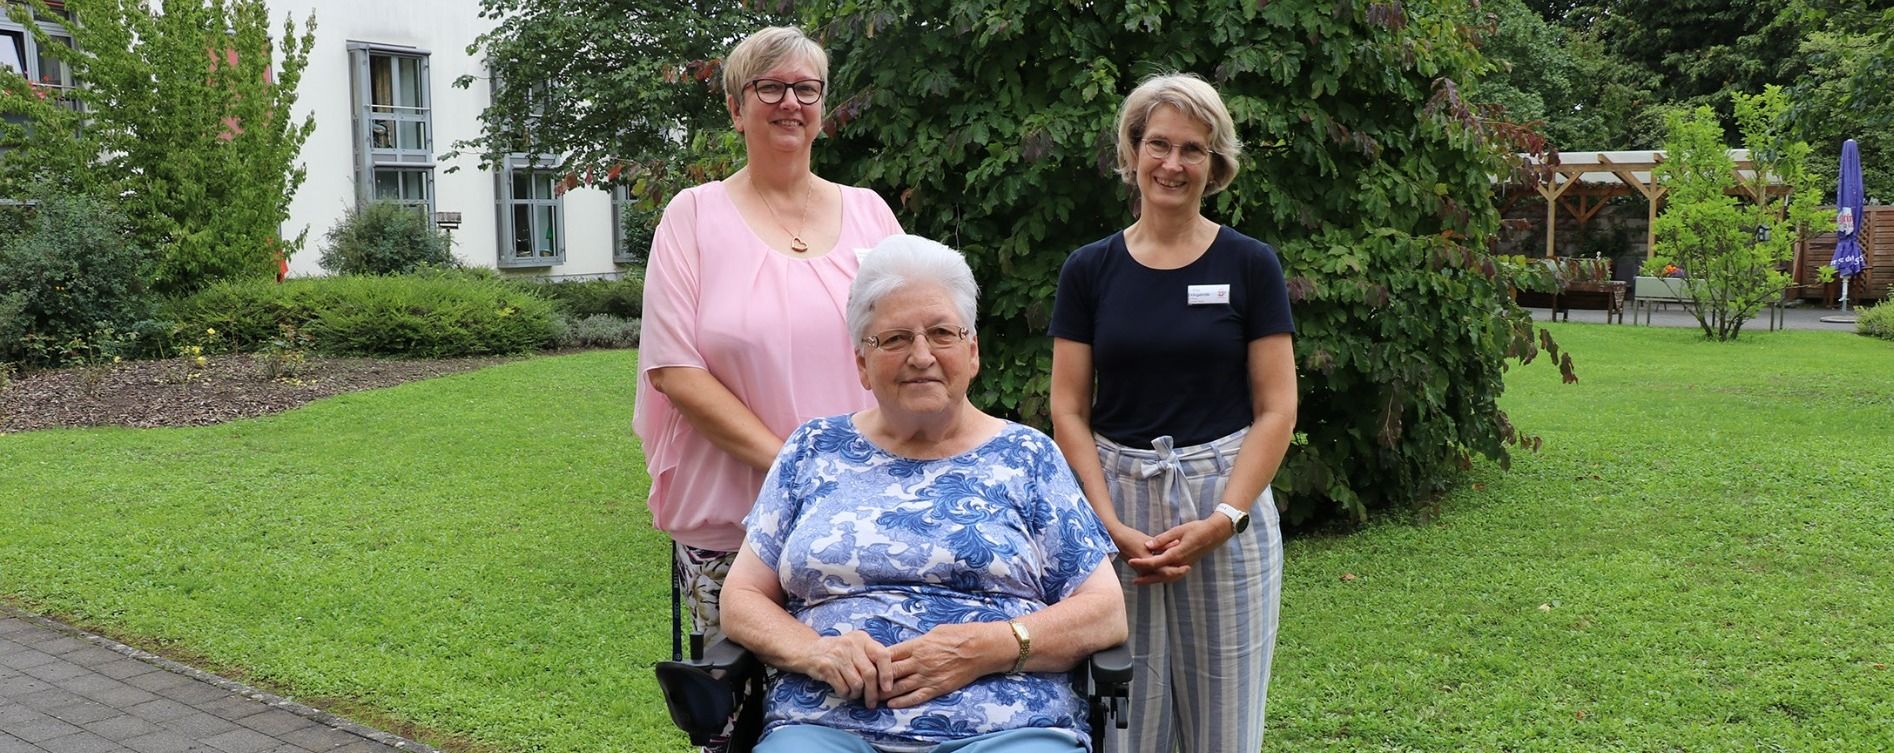 Sie begleitet Senioren in ihrem letzten Lebensabschnitt – für Michaela Wagner (links im Bild) gleicht das einer Berufung. Außerdem zu sehen sind Mechthild Schreiber (vorne) und Ulrike Klingelhöfer (rechts), Leitung Sozialer Dienst. 